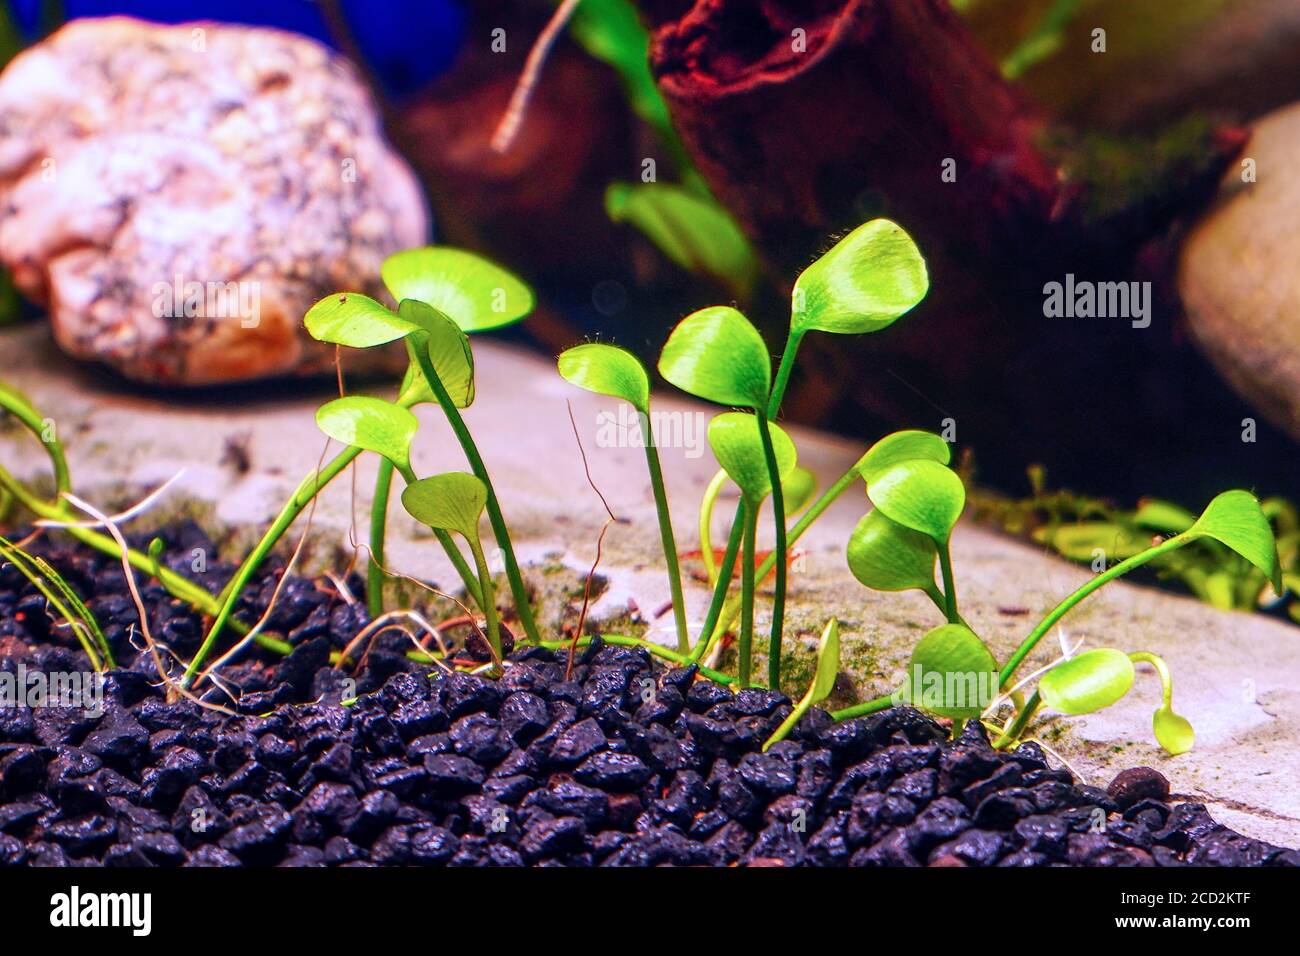 Decorative ground cover plant Marsilea in aquarium Stock Photo